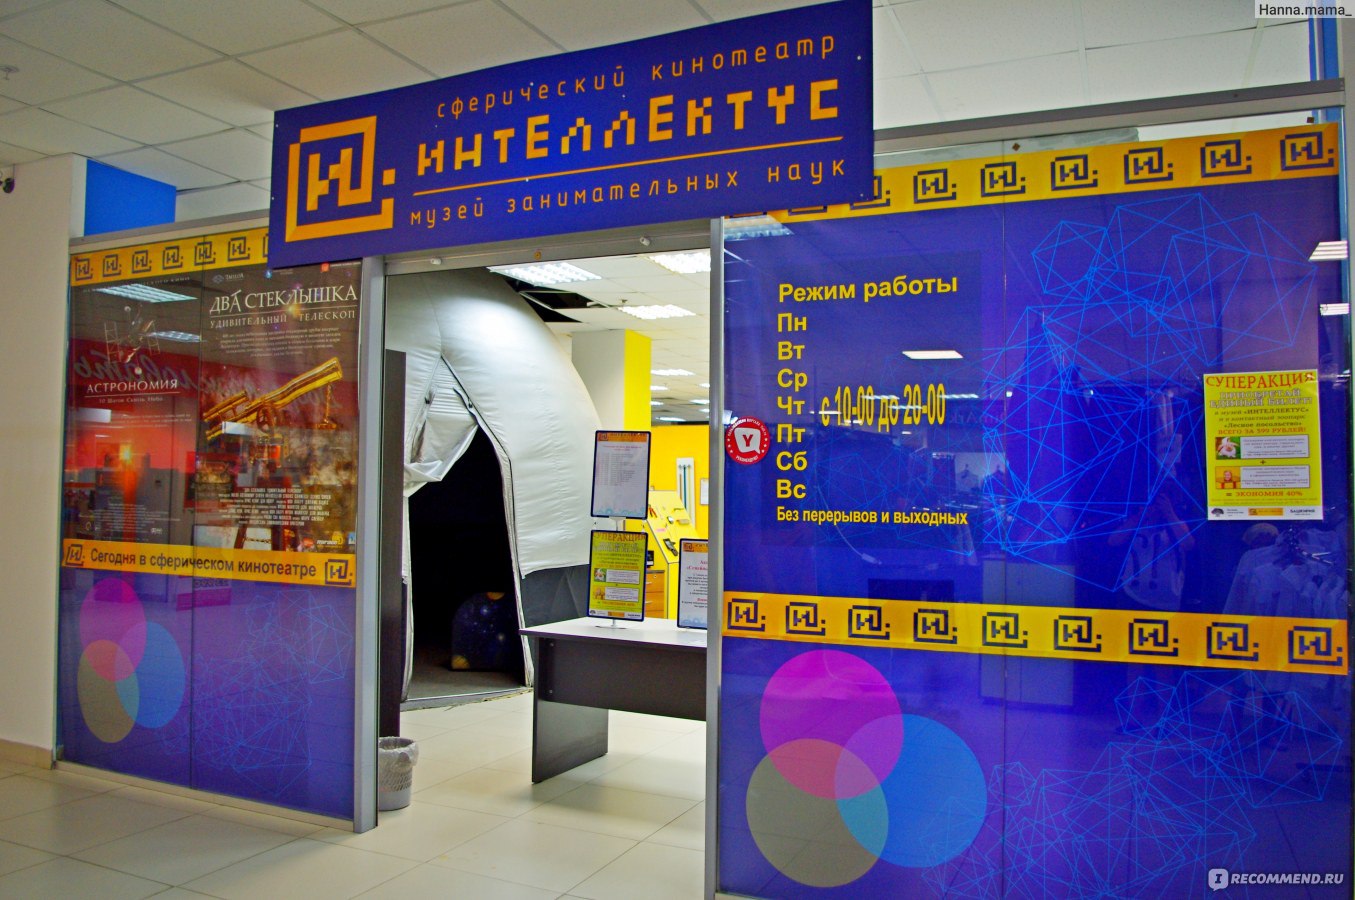 Музей занимательных наук «Интеллектус» (Уфа)